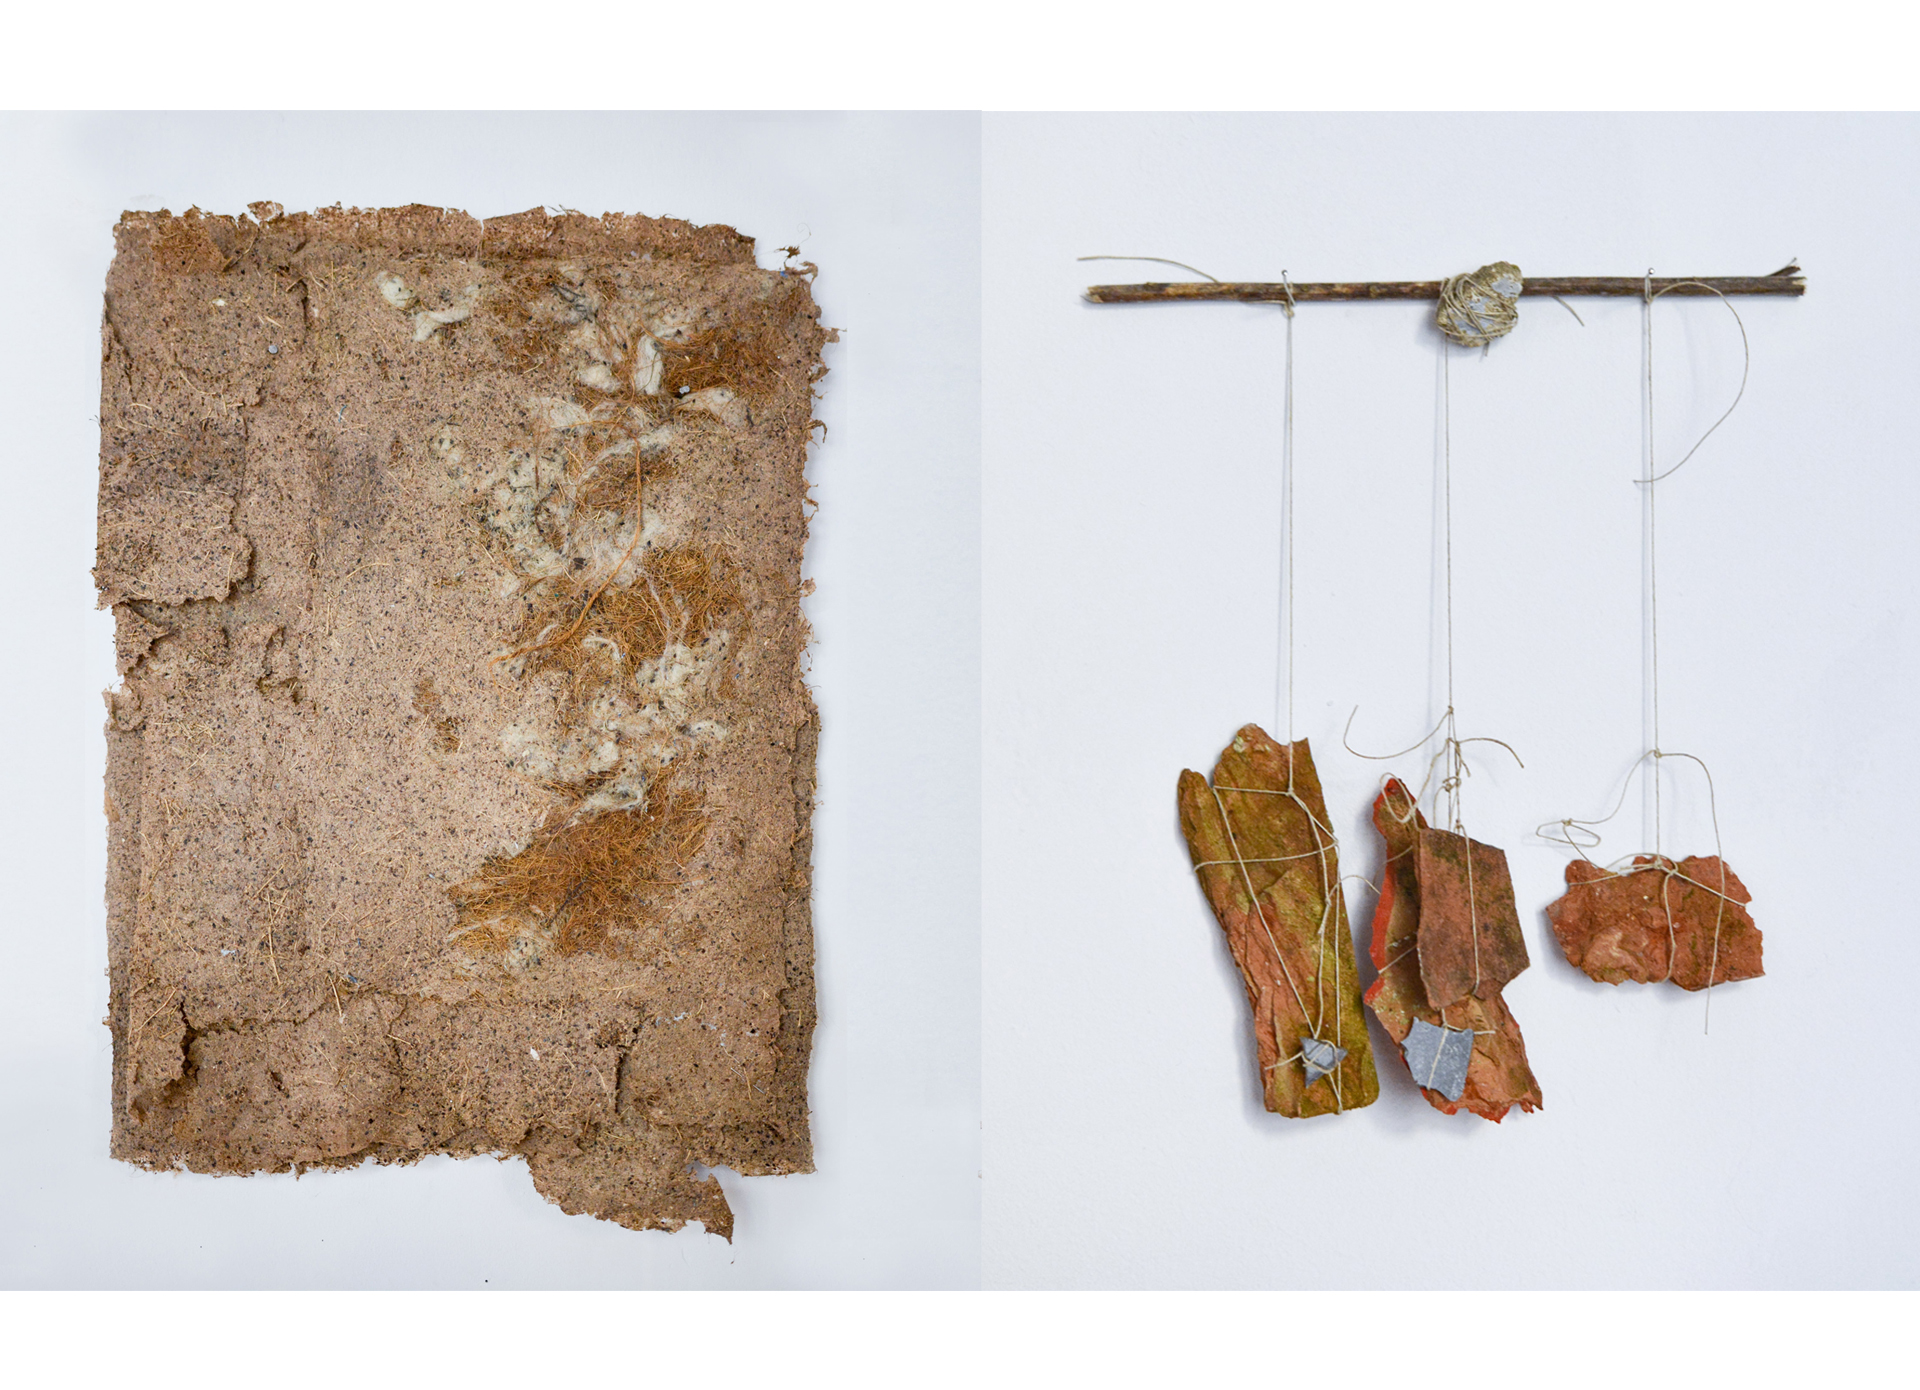 27. Instrumenty wykonane ze znalezionych przedmiotów (porozbijanych cegieł, fragmentów lusterek, sznurków, roślin wydających różnego rodzaju dźwięki).